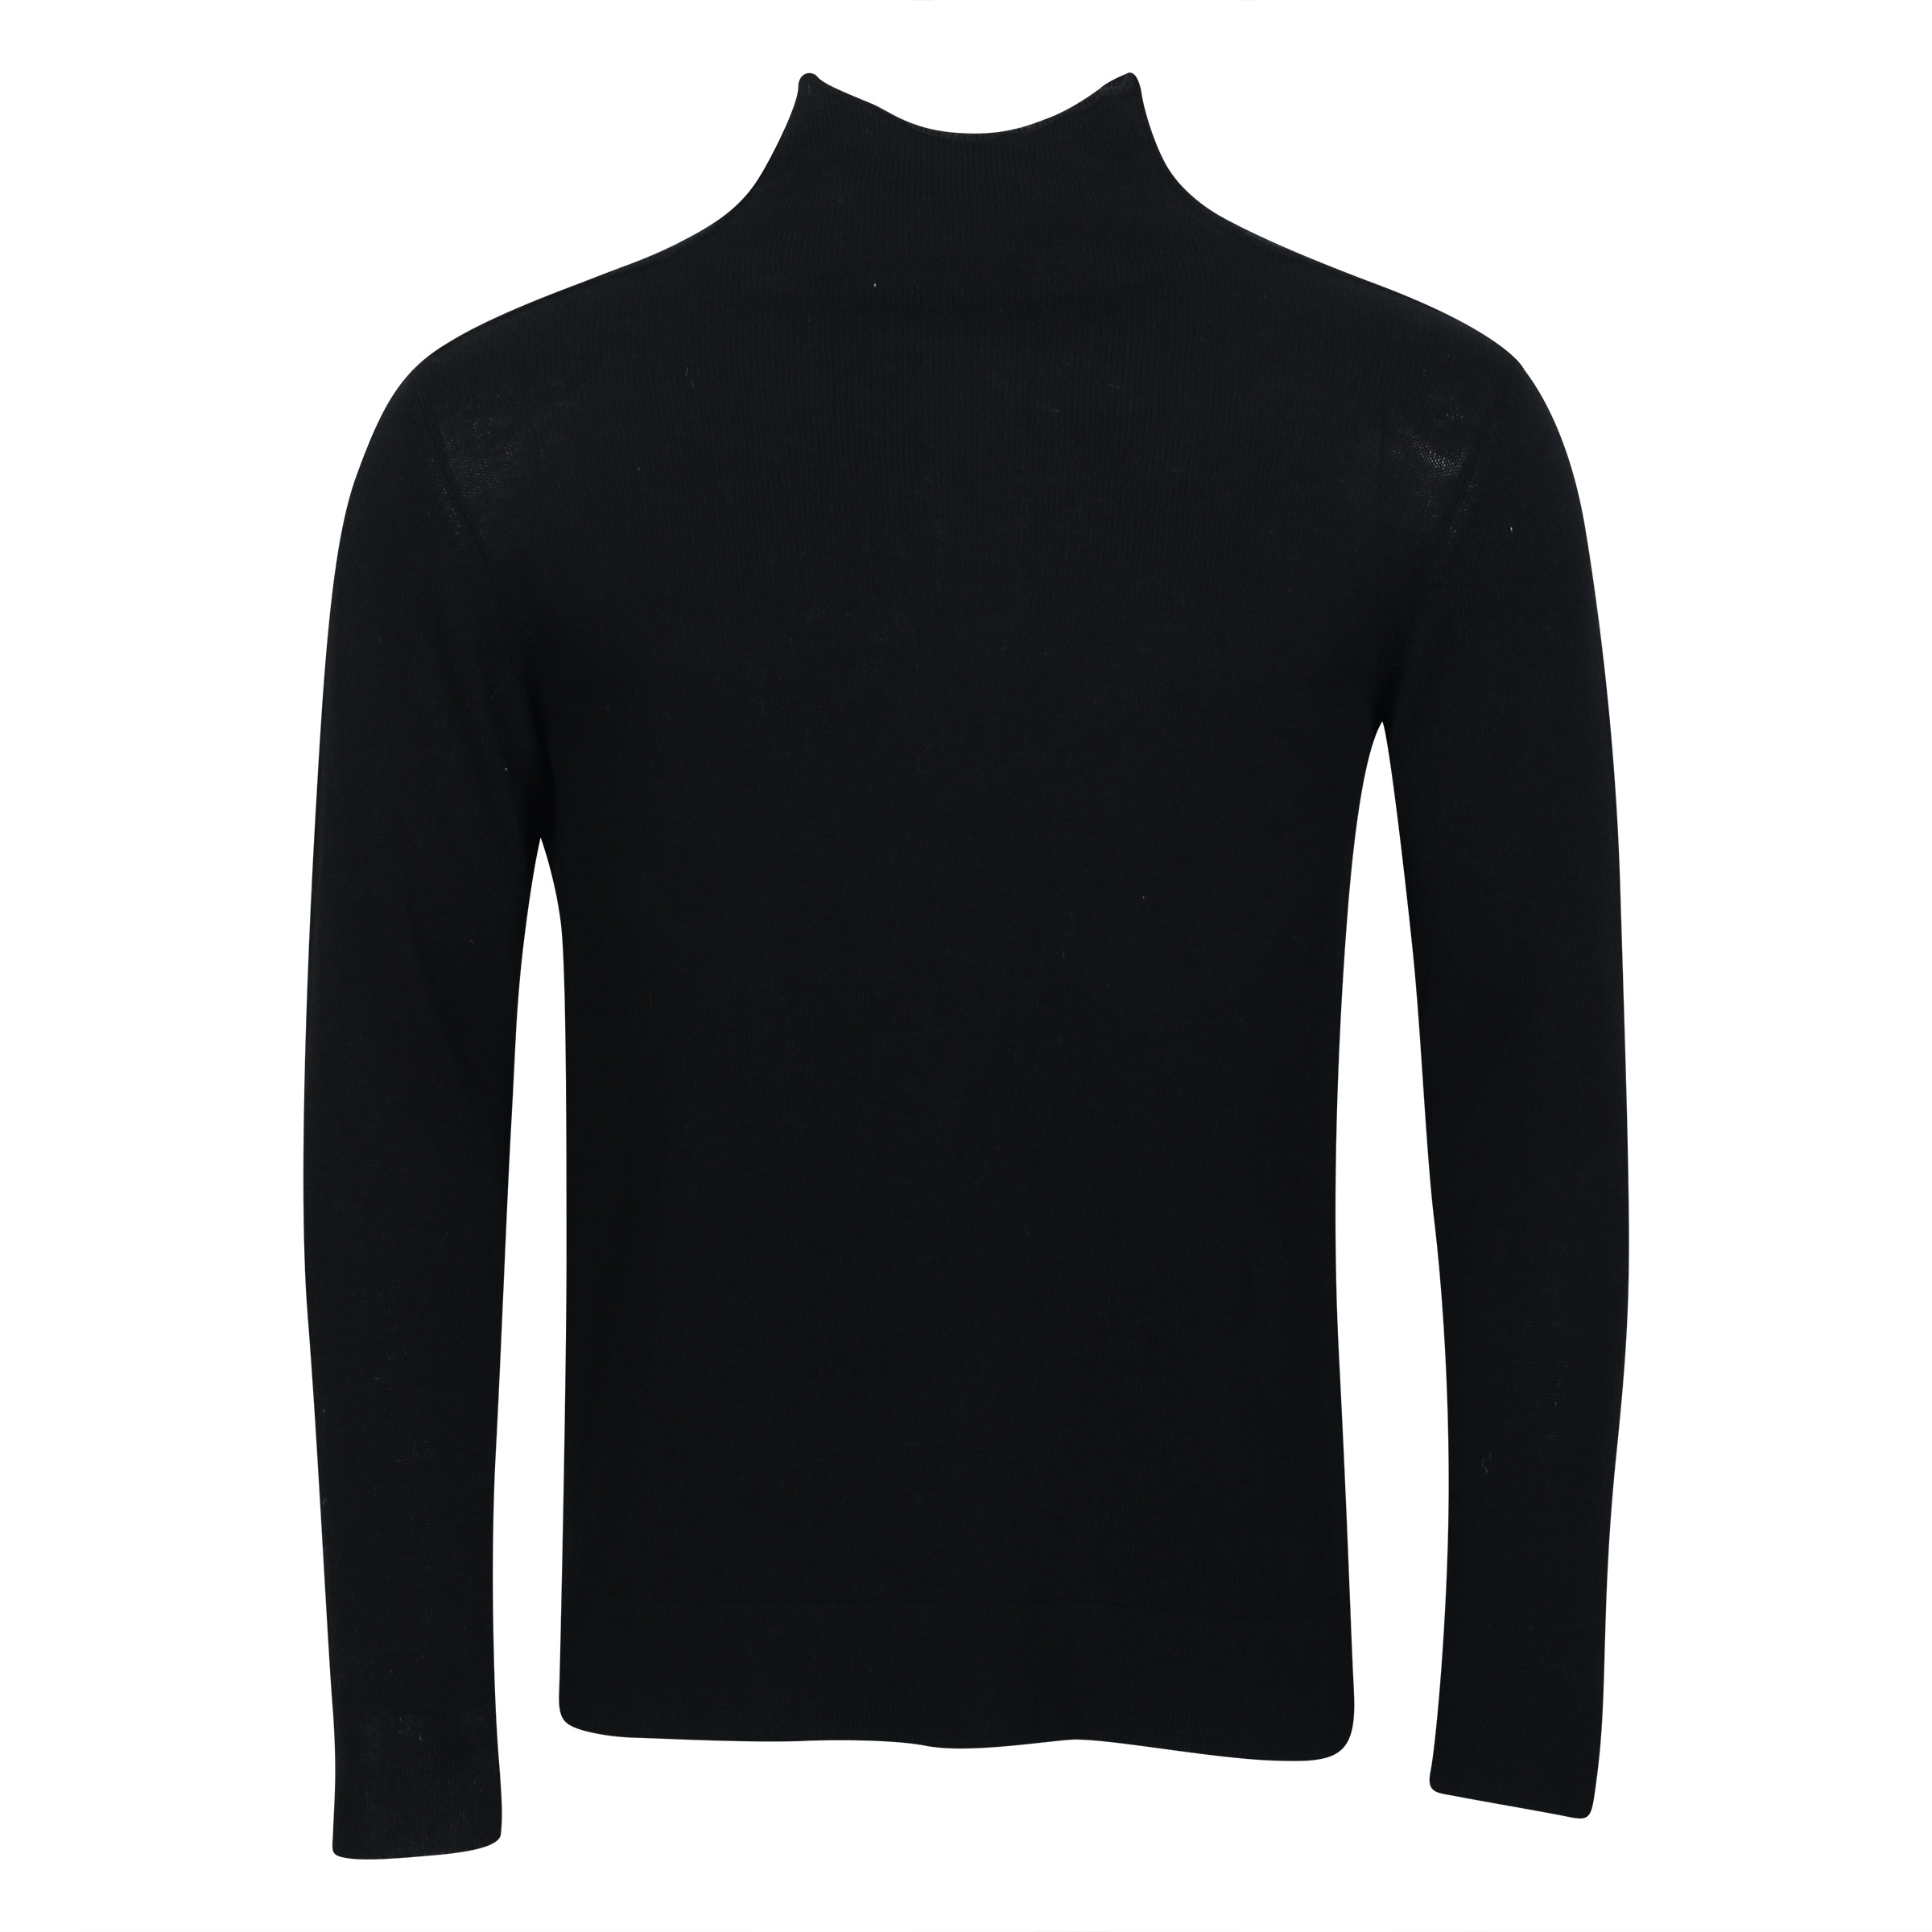 Transit Uomo Light Wool Turtle Neck Sweater in Black